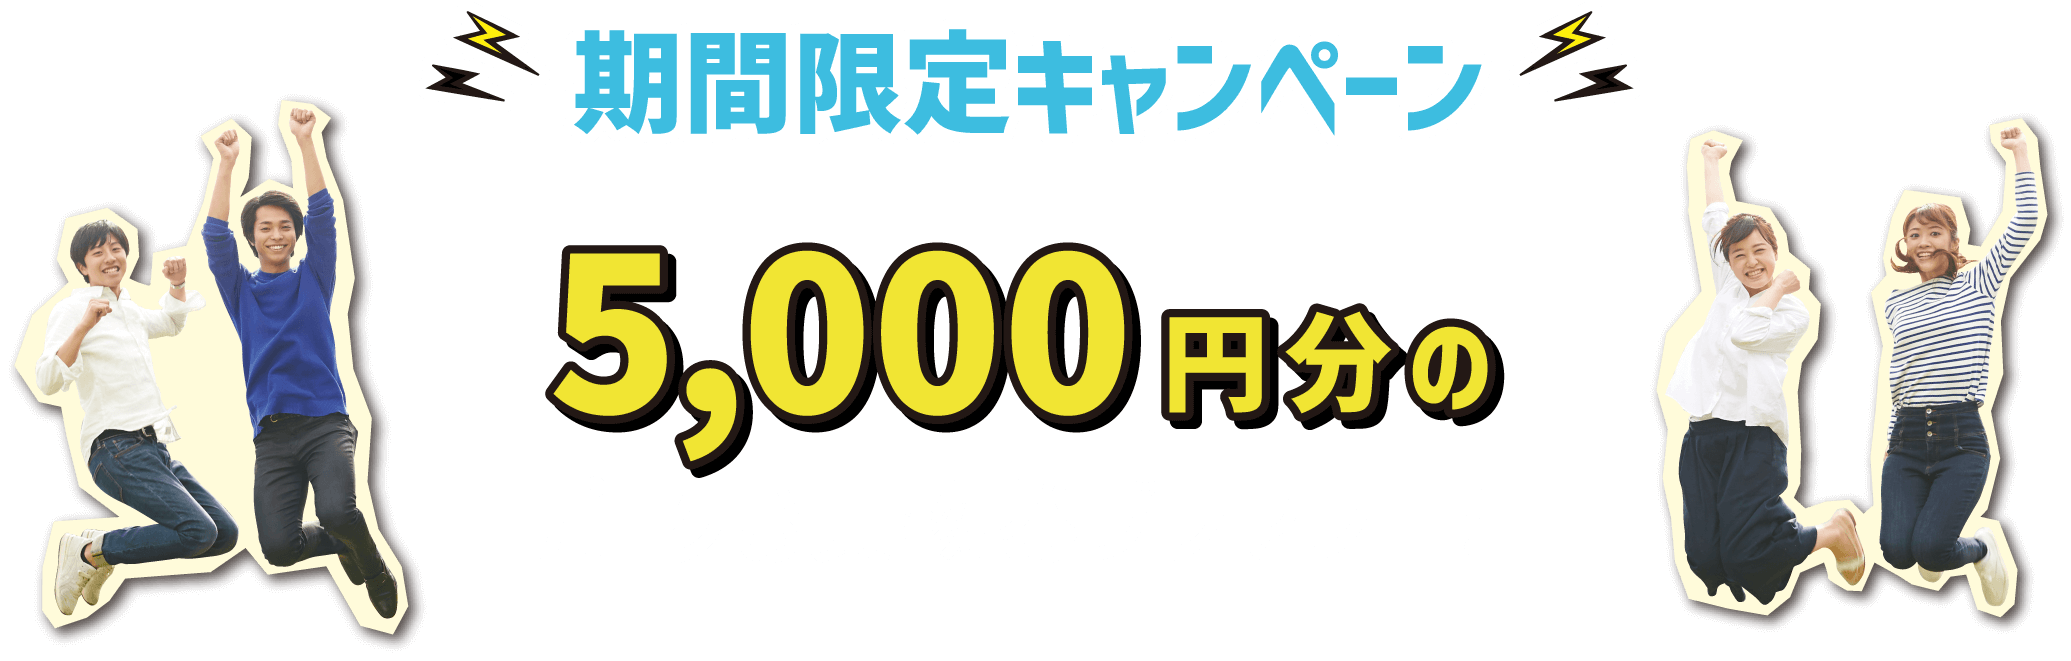 期間限定キャンペーン 5,000円分のパークお買物券プレゼント!